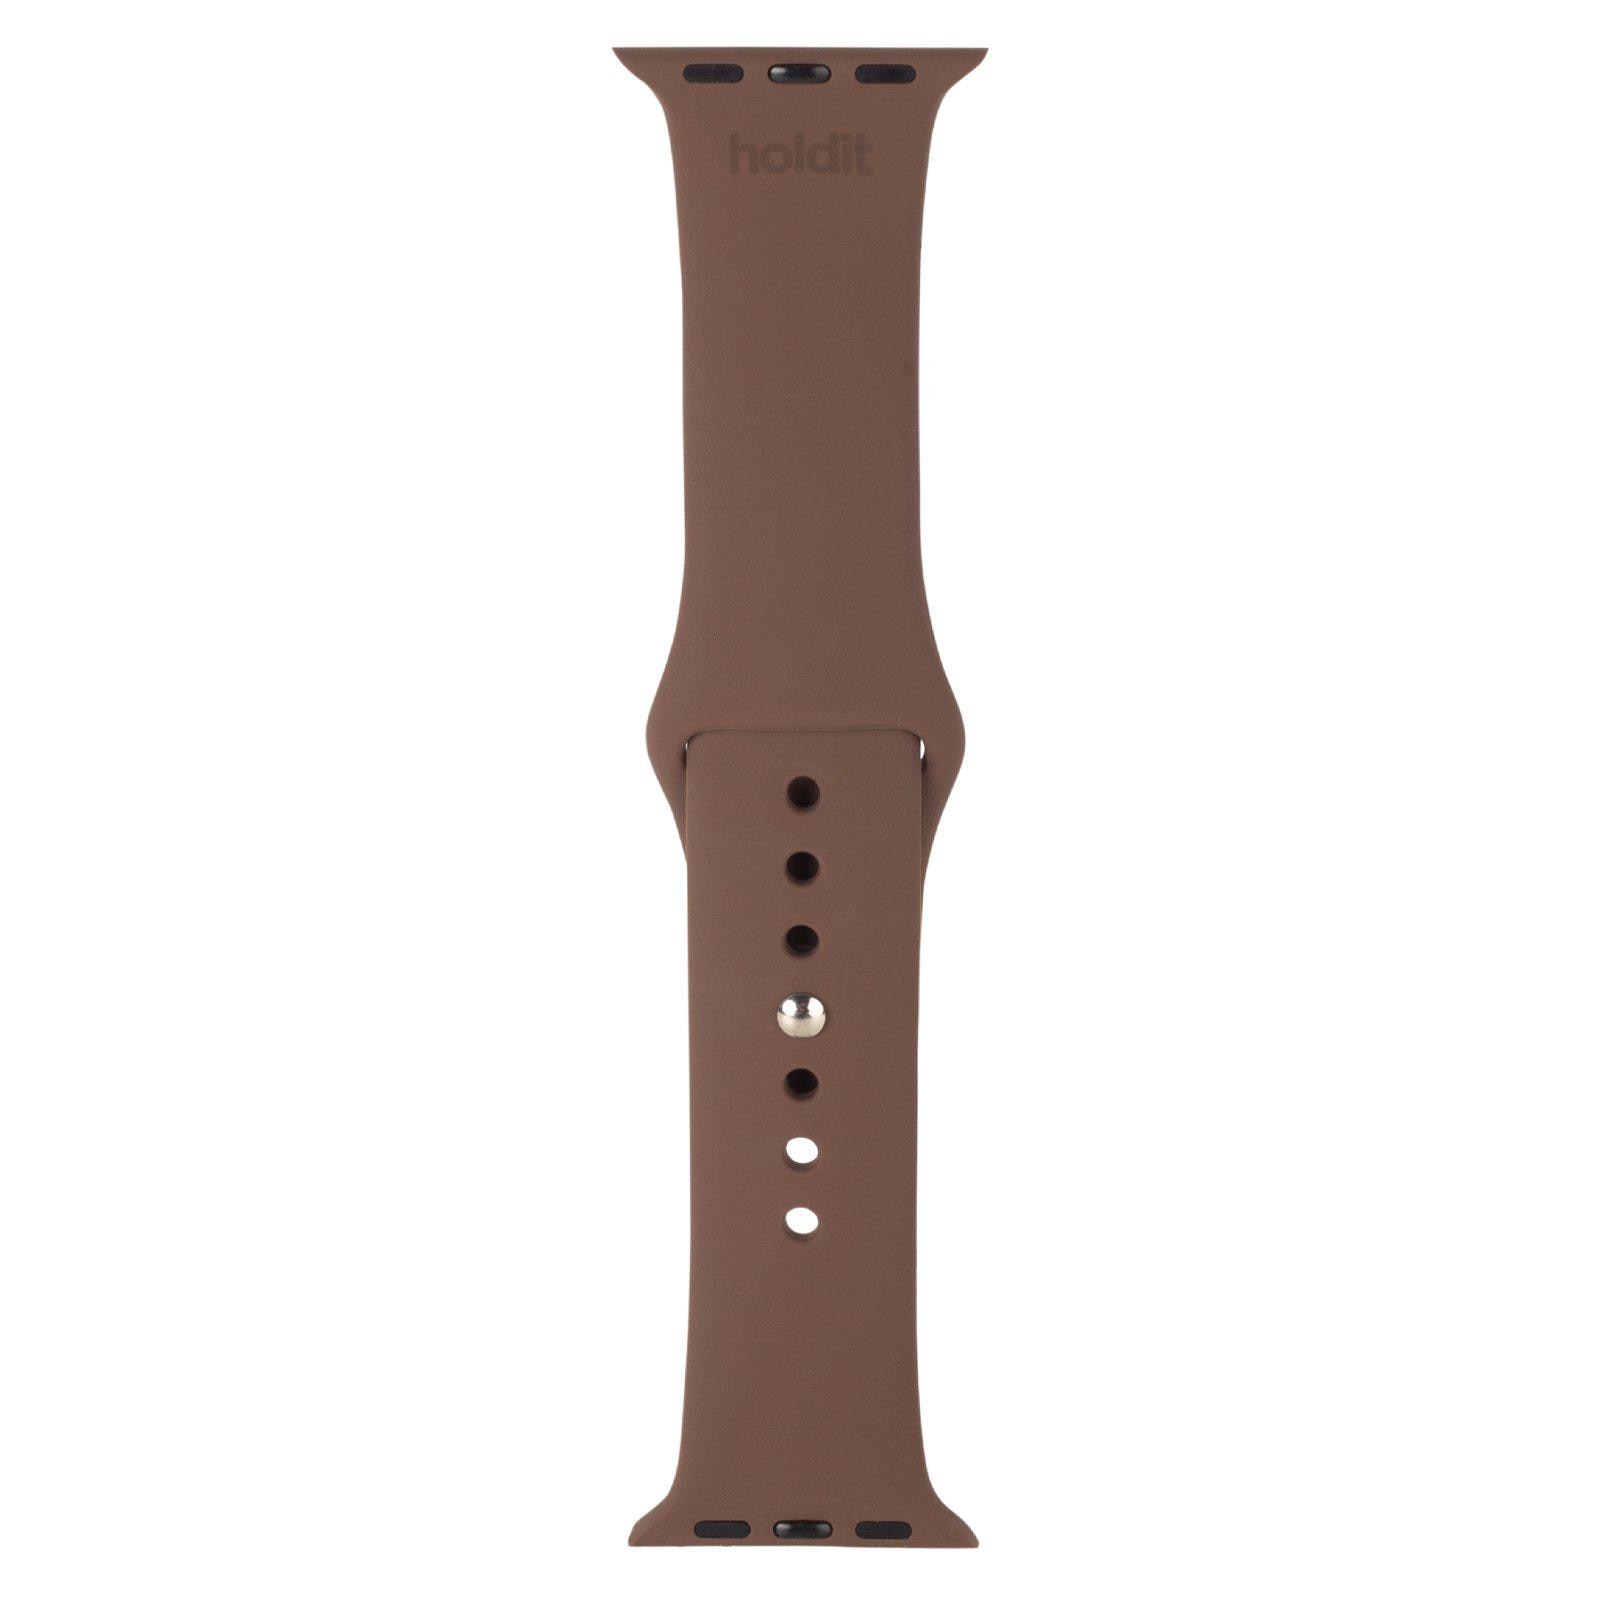 Bracelet en silicone Apple Watch 41mm Series 8, Dark Brown